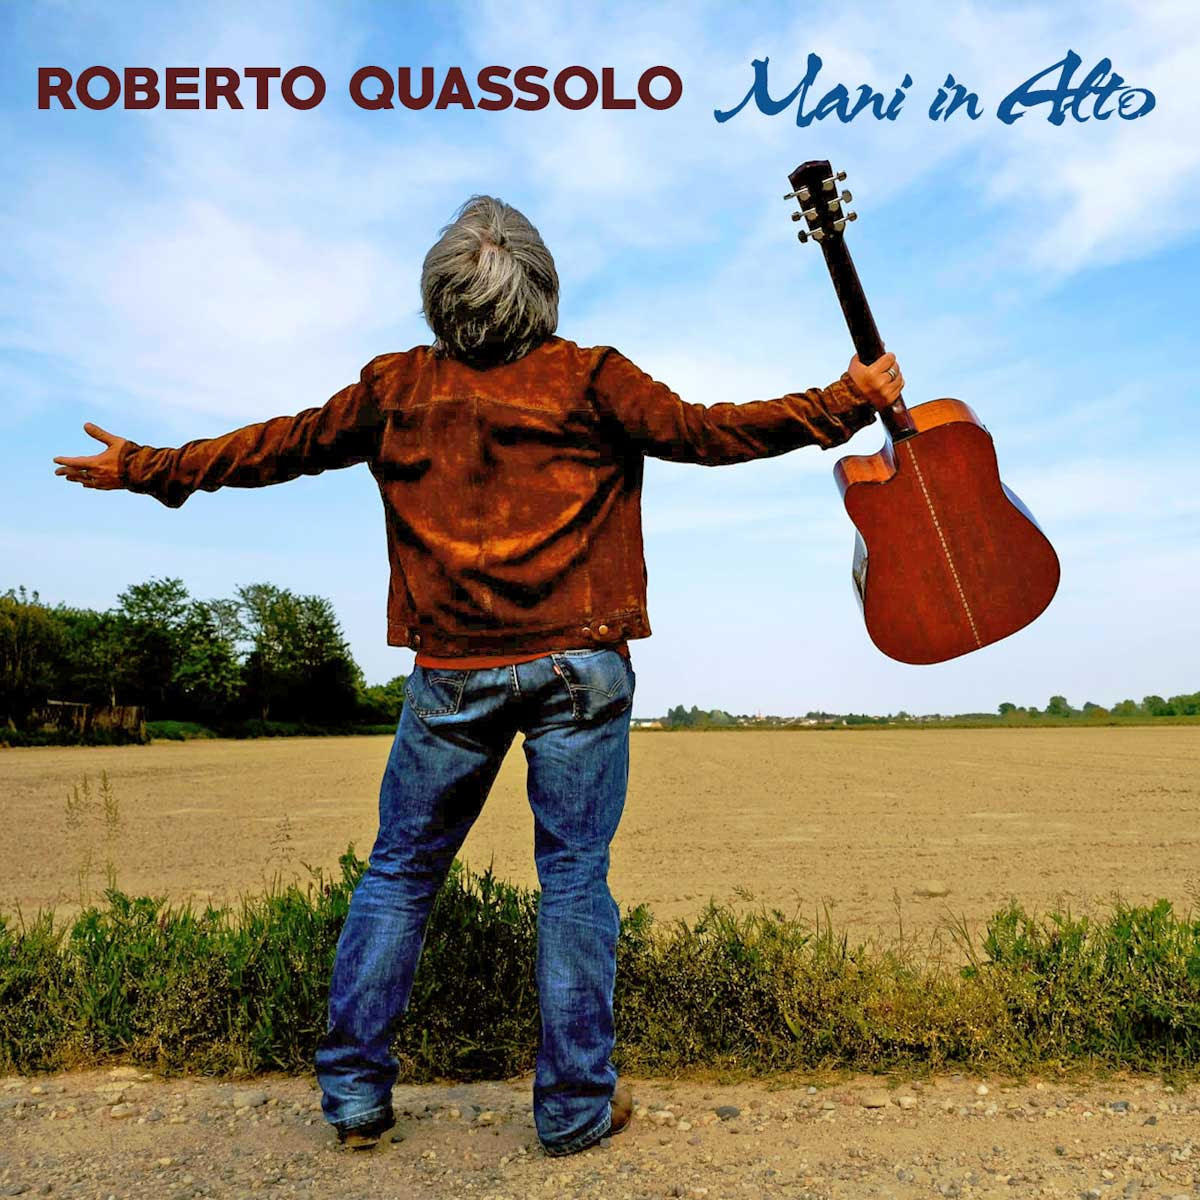 ROBERTO QUASSOLO: da venerdì 8 marzo disponibile in digitale “MANI IN ALTO” il nuovo singolo